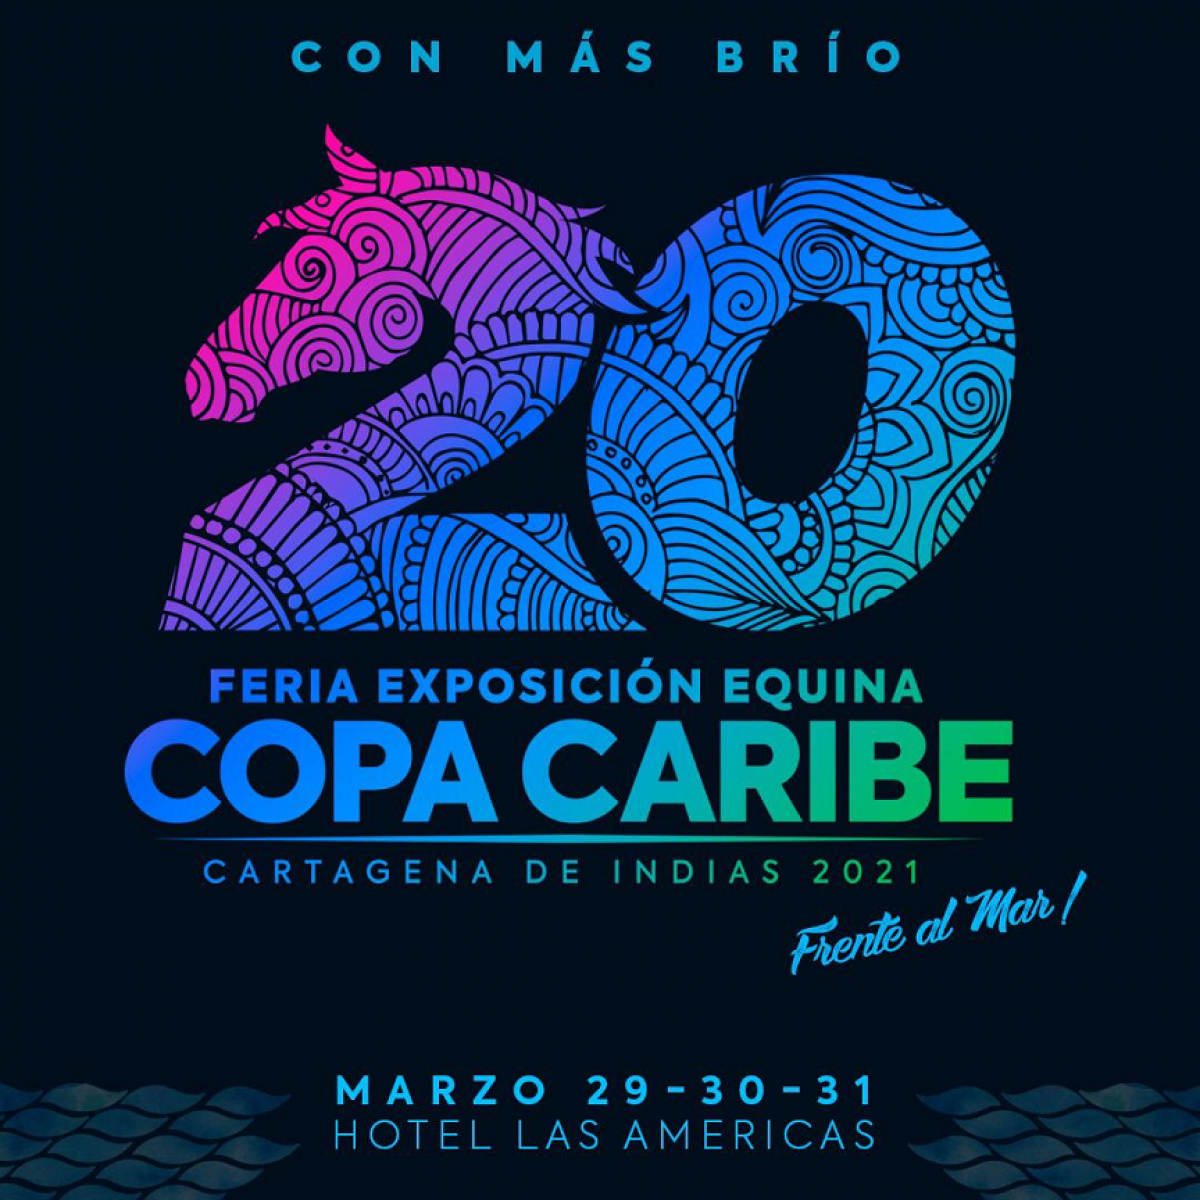 20 Feria Exposición Equina Copa Caribe 